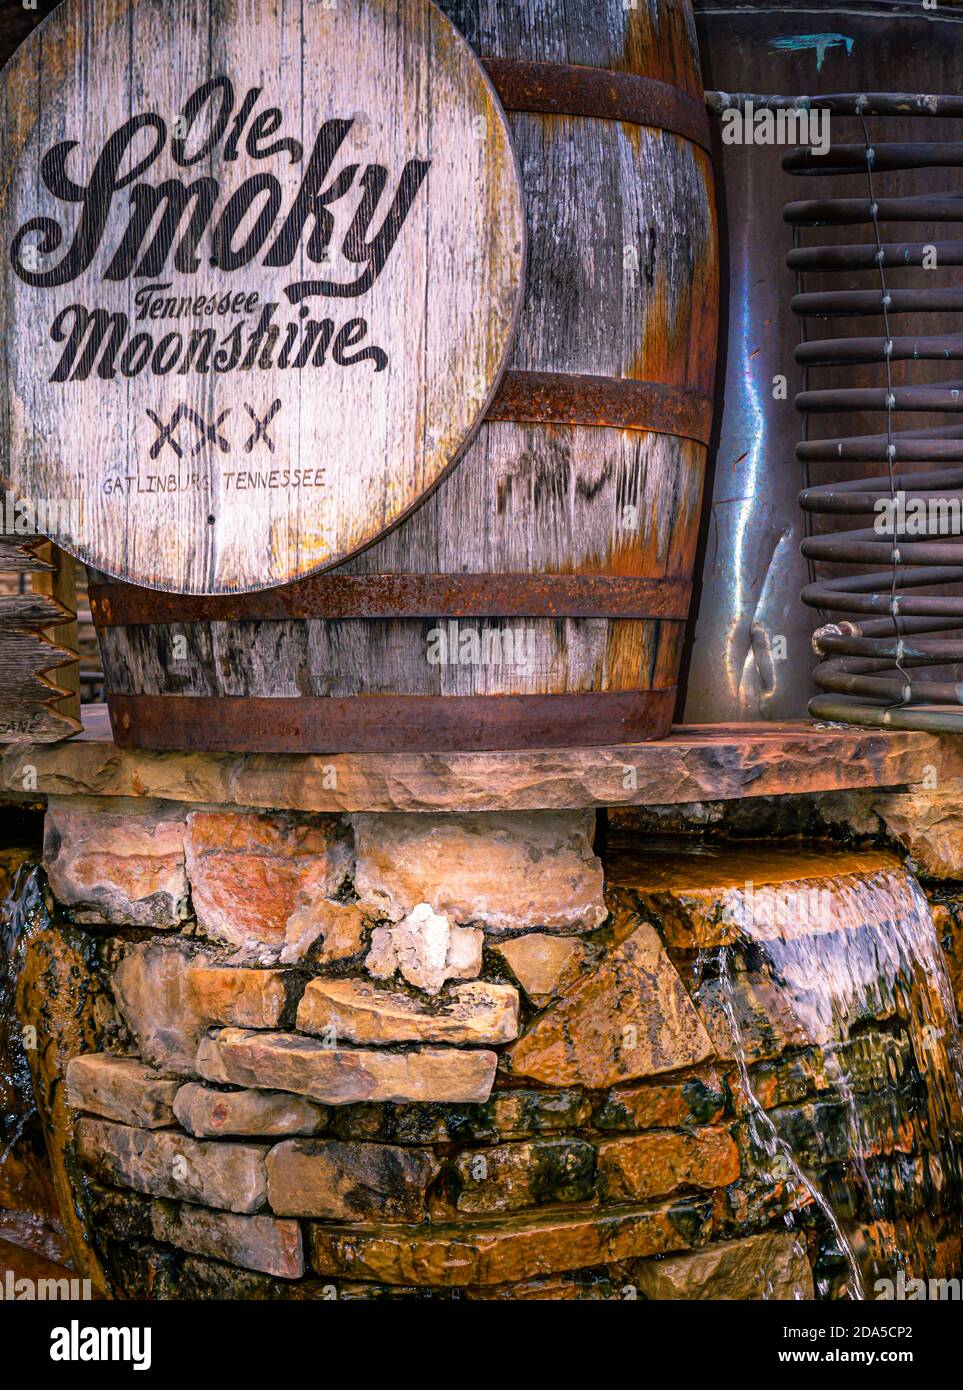 Un barile di quercia all'aperto e una pubblicità esposta su una cascata di acqua presso la distilleria Ole Smoky Tennessee Moonshine, Gatlinburg, TN Foto Stock